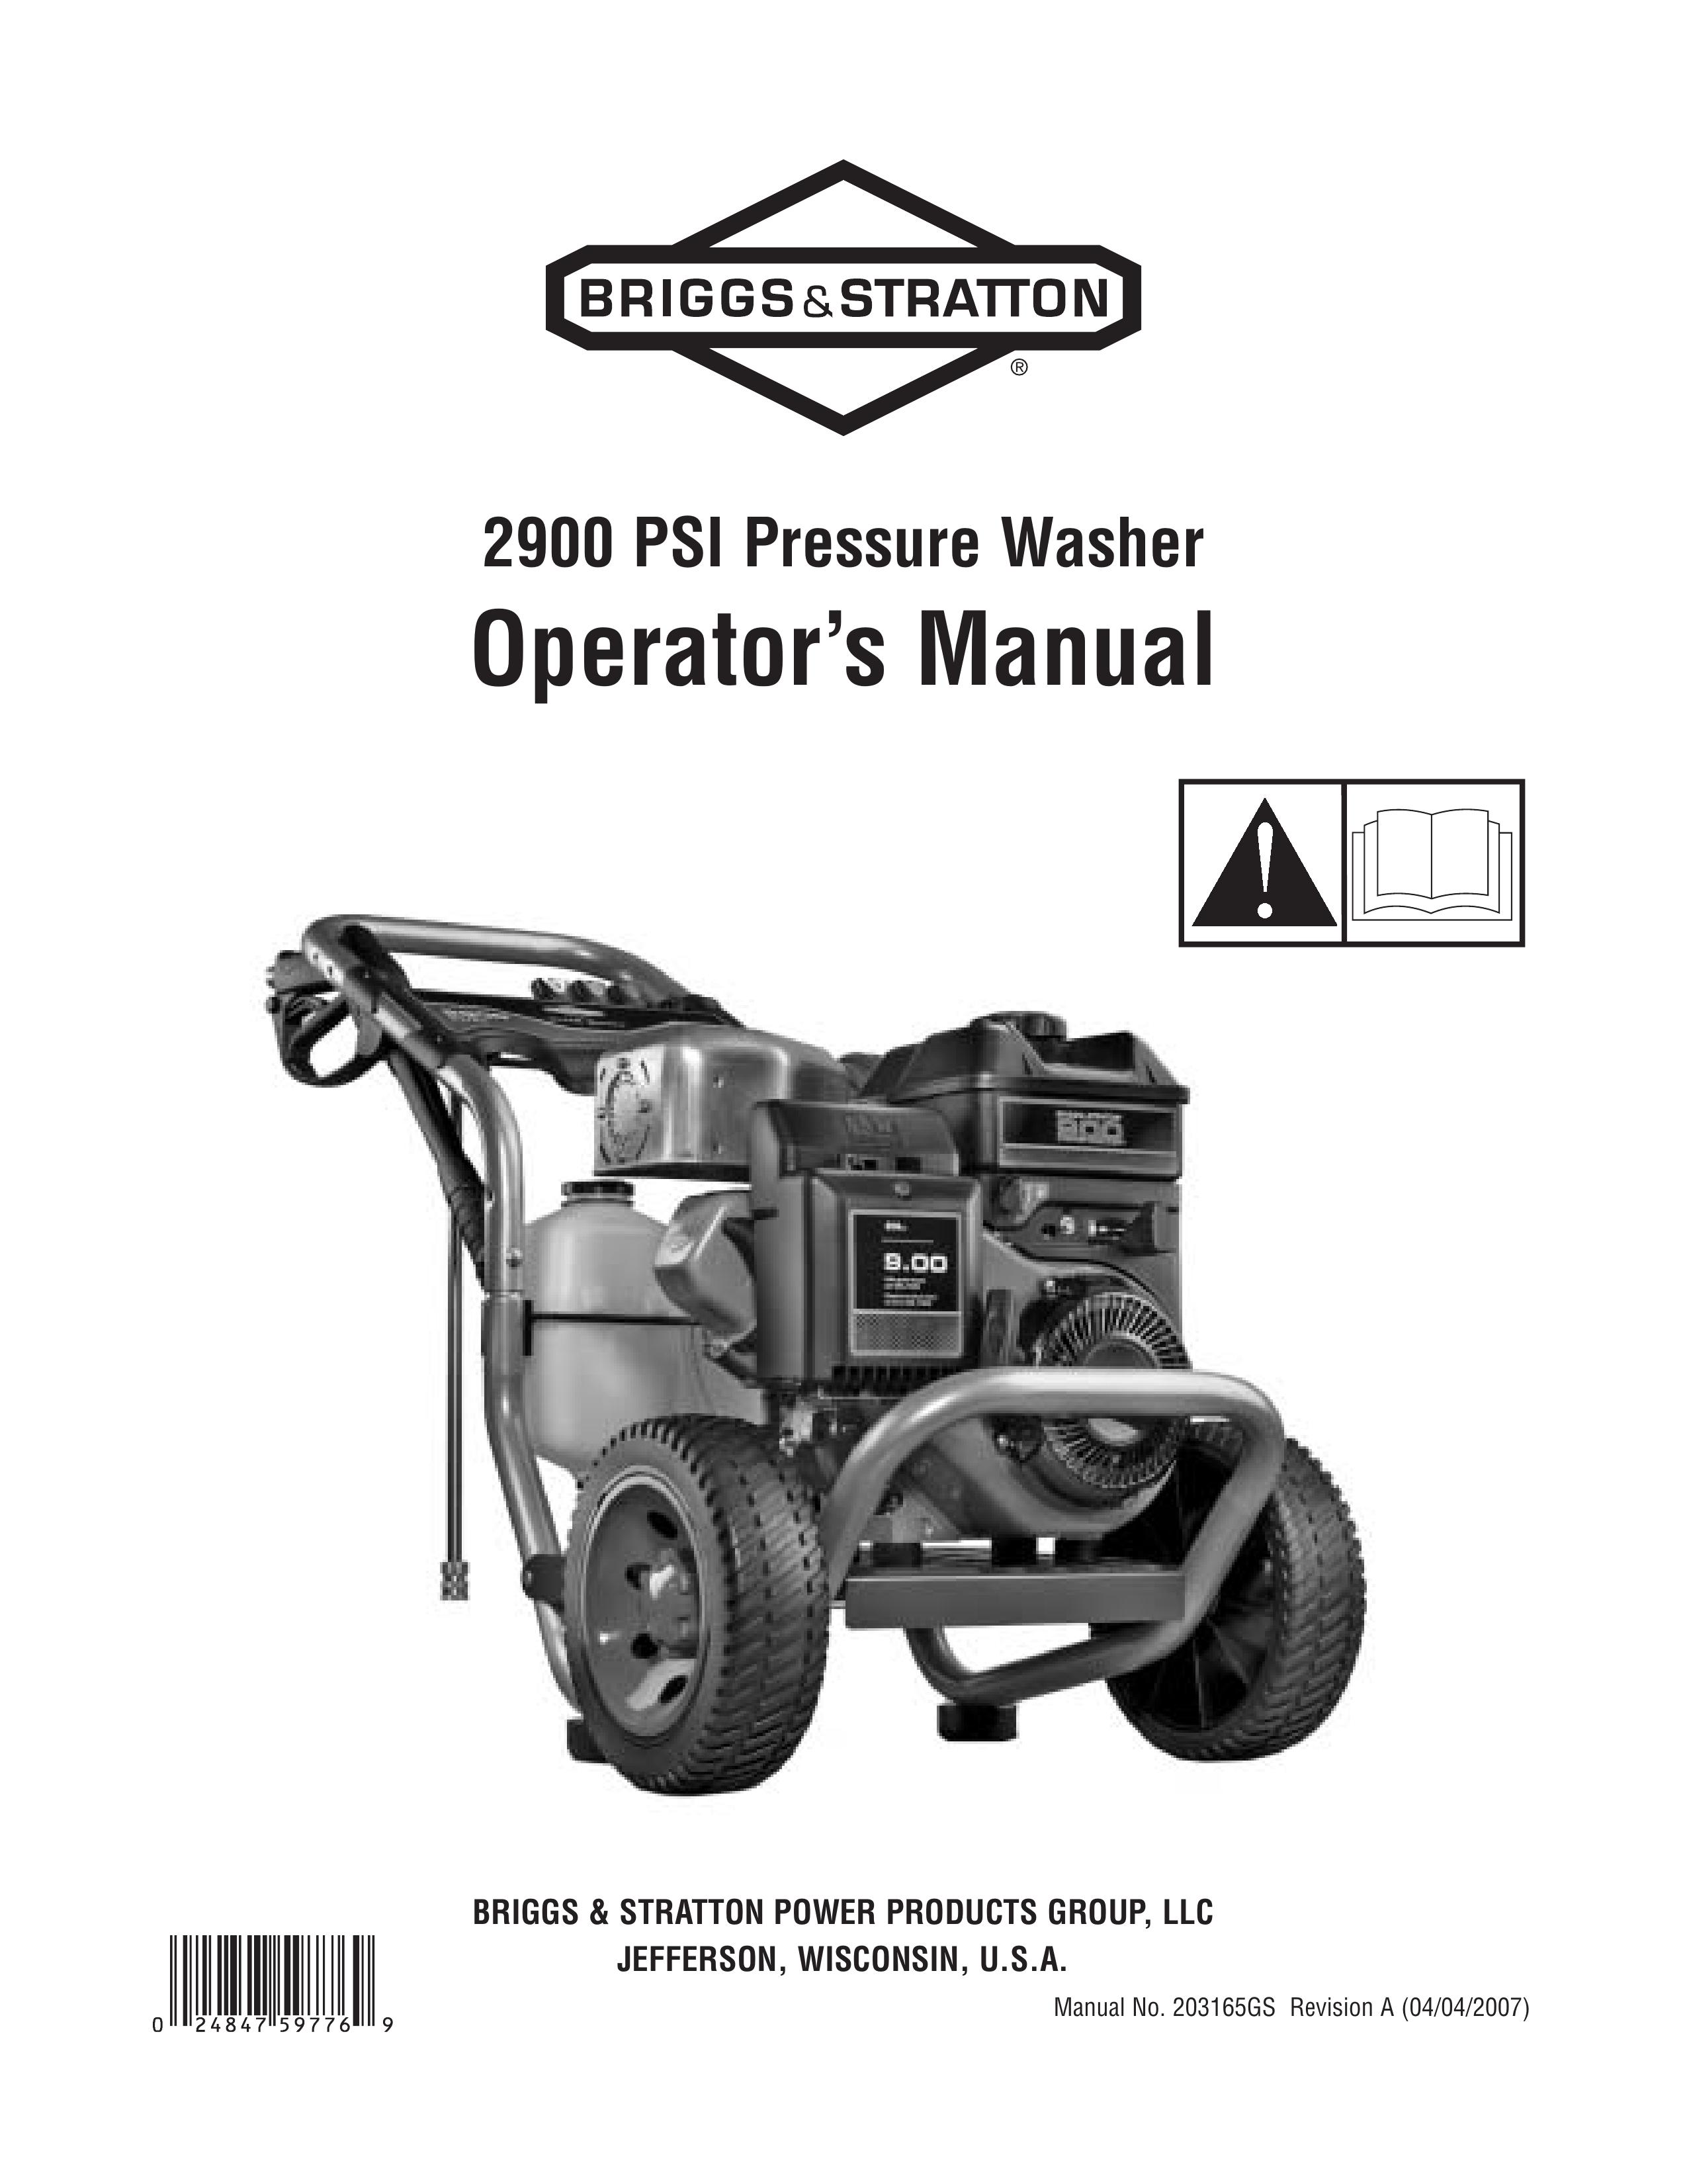 Briggs & Stratton 020251 Pressure Washer User Manual